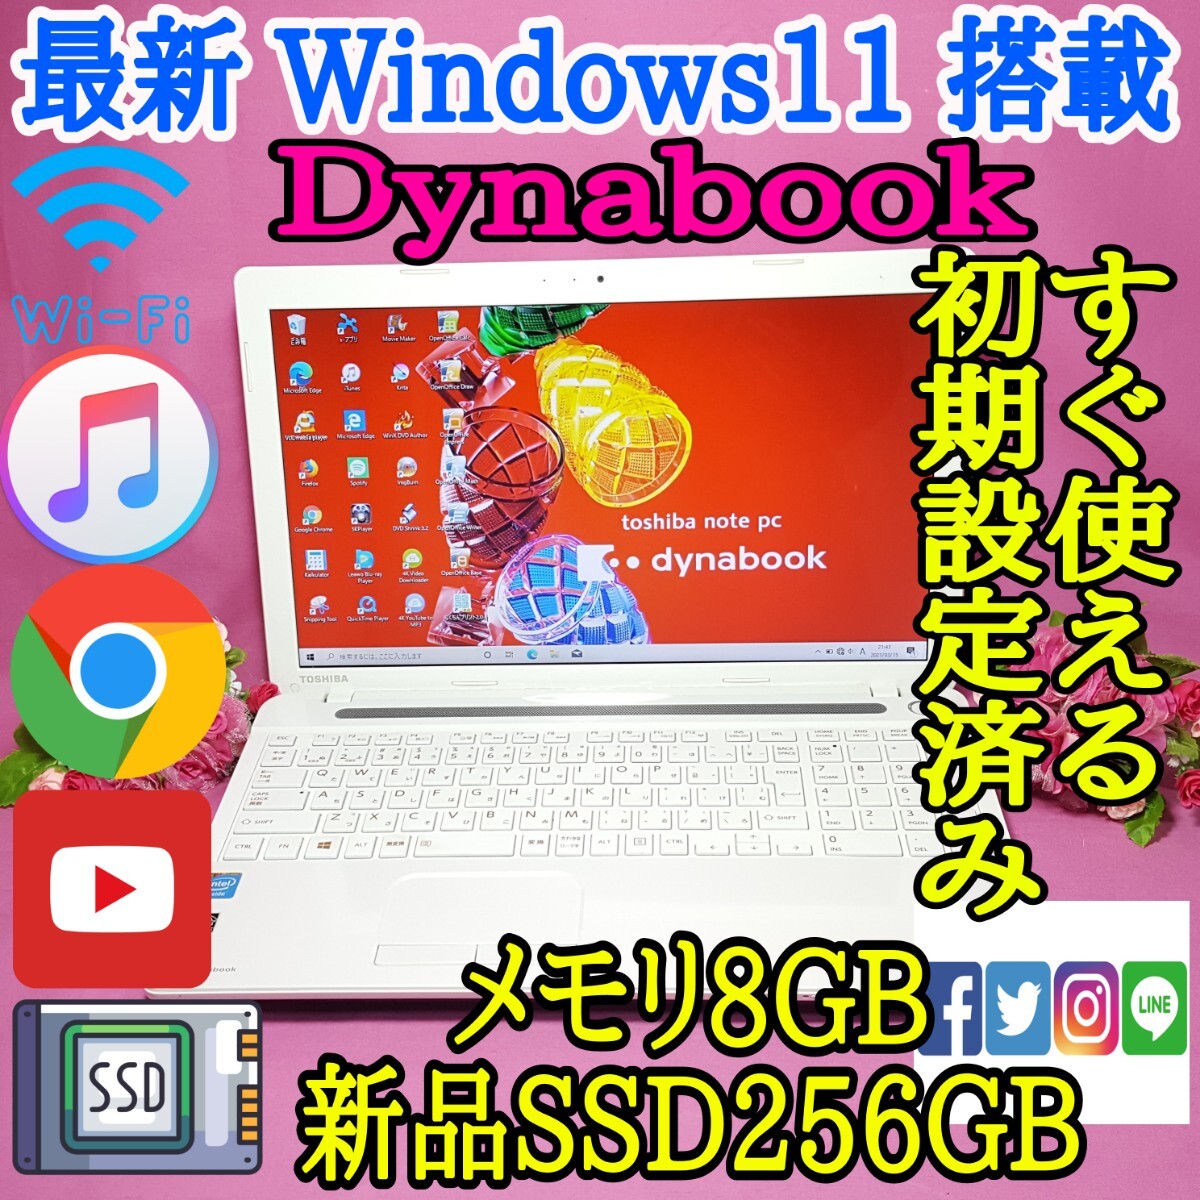 美品!東芝/Dynabook/ホワイト色/最新Windows11搭載/新品SSD256GB/メモリ4GB/WEBカメラ/HDMI/LINE/iTunes/Office/Wi-Fi/便利なソフト多数!!